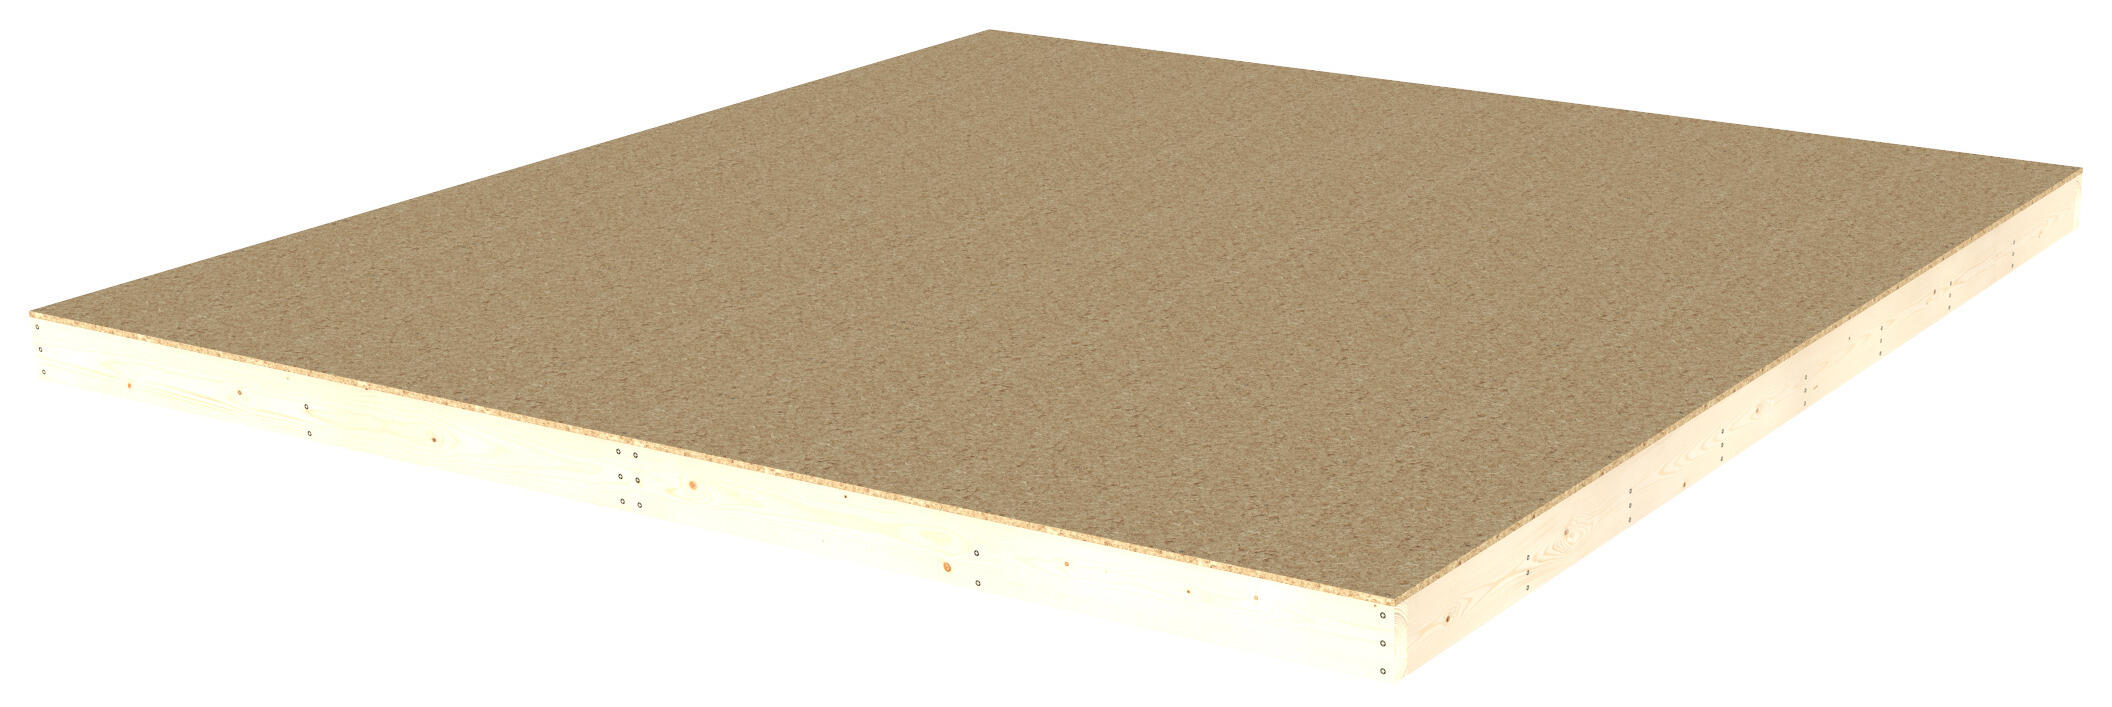 Suelo de madera como 3,52×3,55m superficie 12,49m²